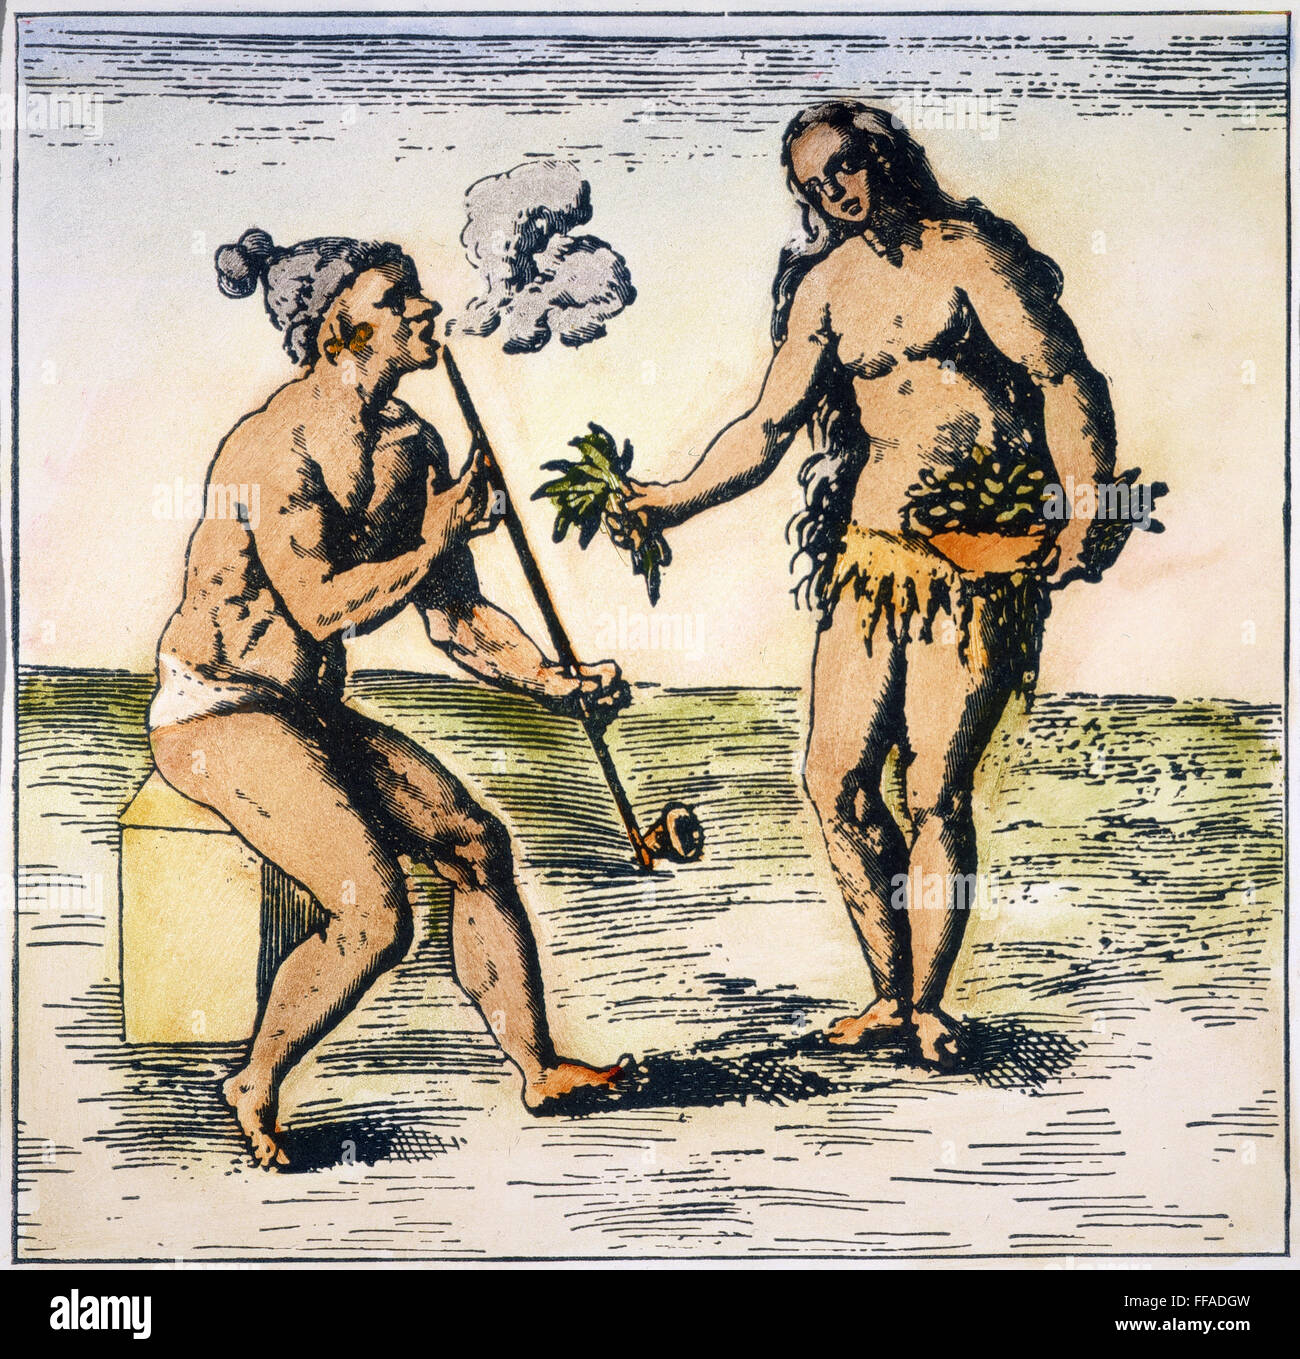 DE BRY: FLORIDA nativi americani./nA Florida nativa americana di fumare un tubo. Dettaglio di un incisione, 1591, da Theodor de bry. Foto Stock